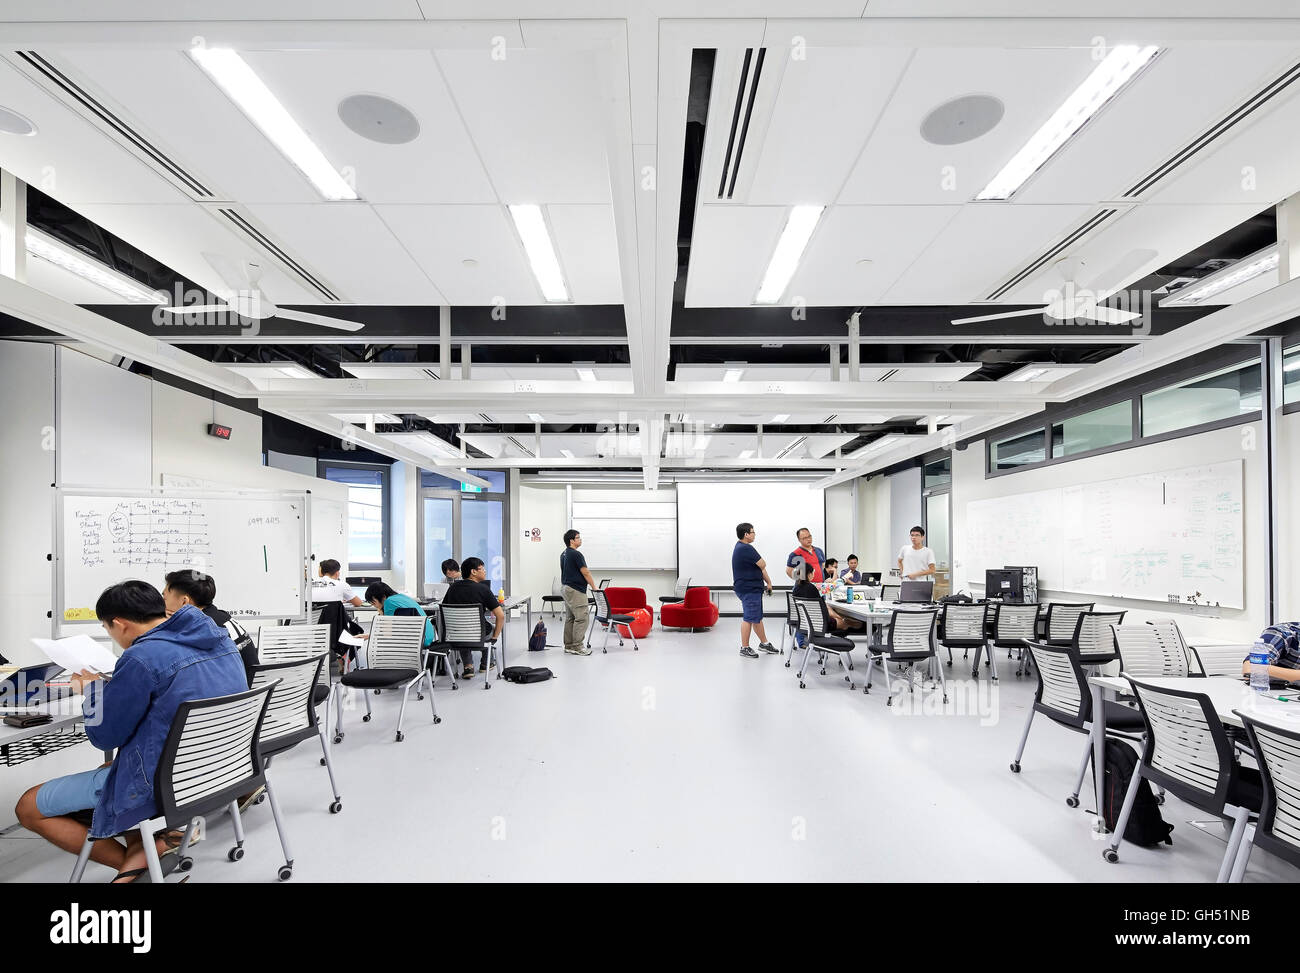 Plan abierto el espacio del aula. Singapur Universidad de Tecnología y diseño, Singapore, Singapur. Arquitecto: UNStudio, 2015. Foto de stock